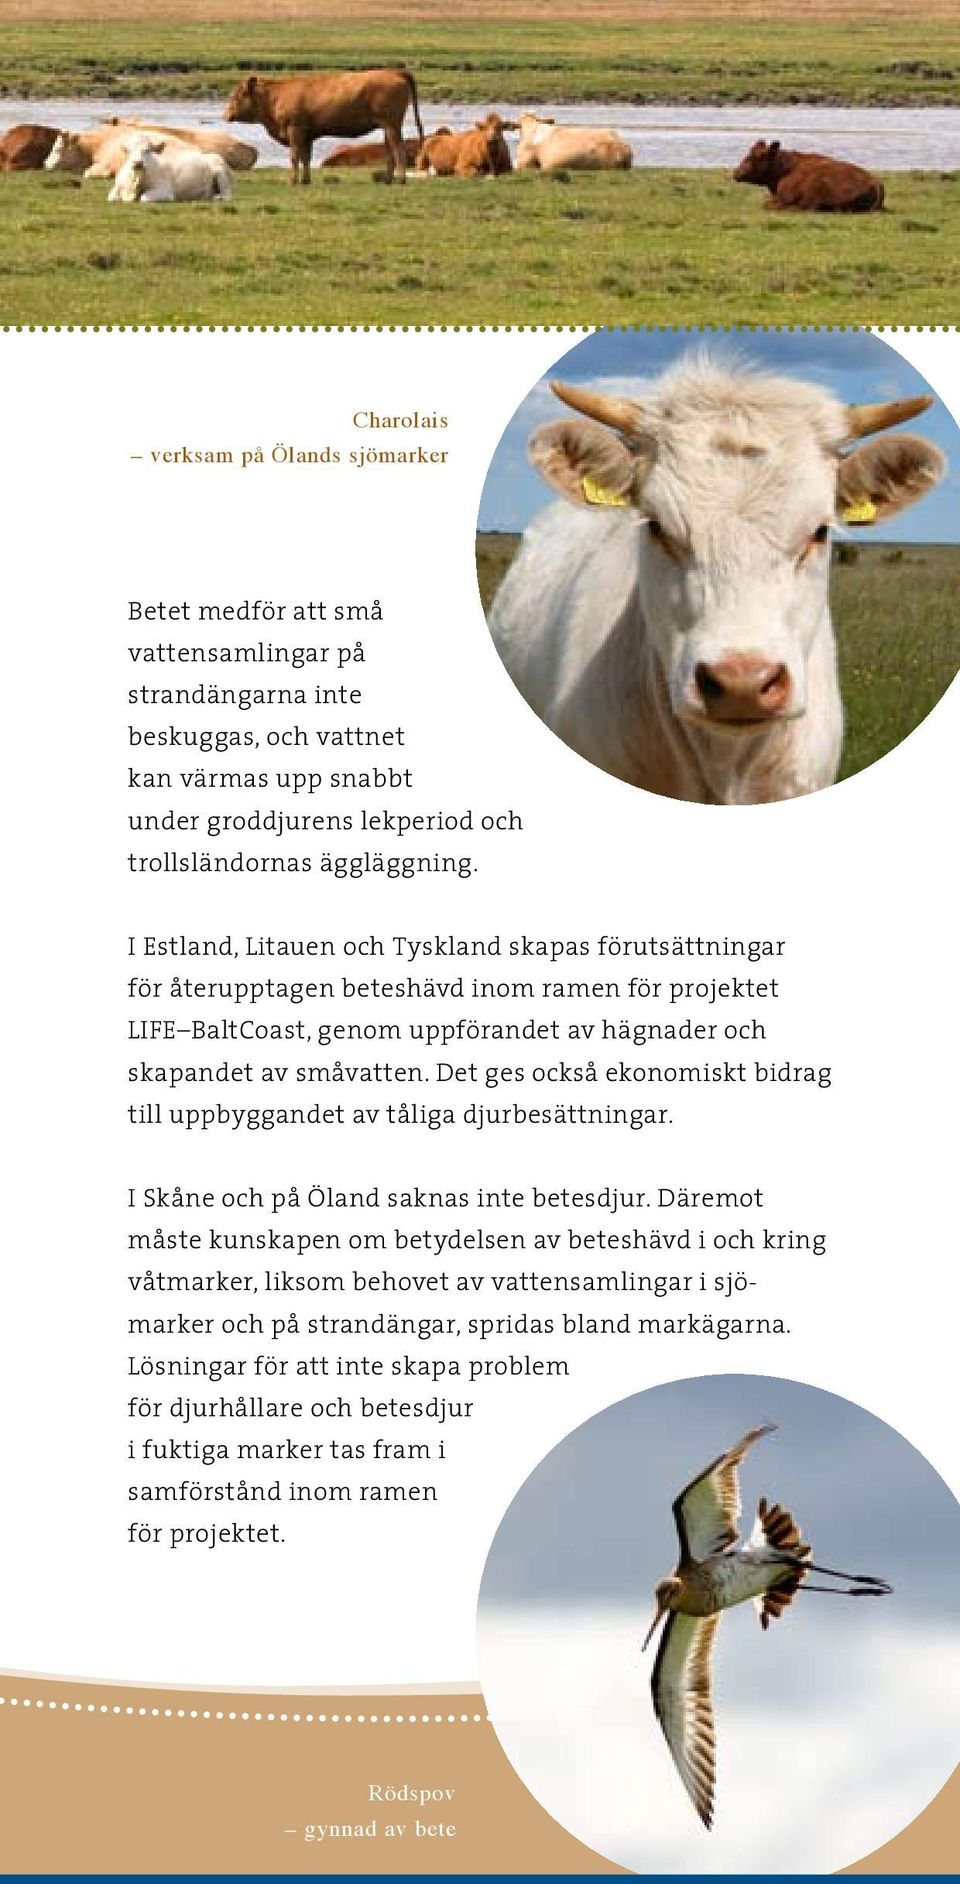 Det ges också ekonomiskt bidrag till uppbyggandet av tåliga djurbesättningar. I Skåne och på Öland saknas inte betesdjur.